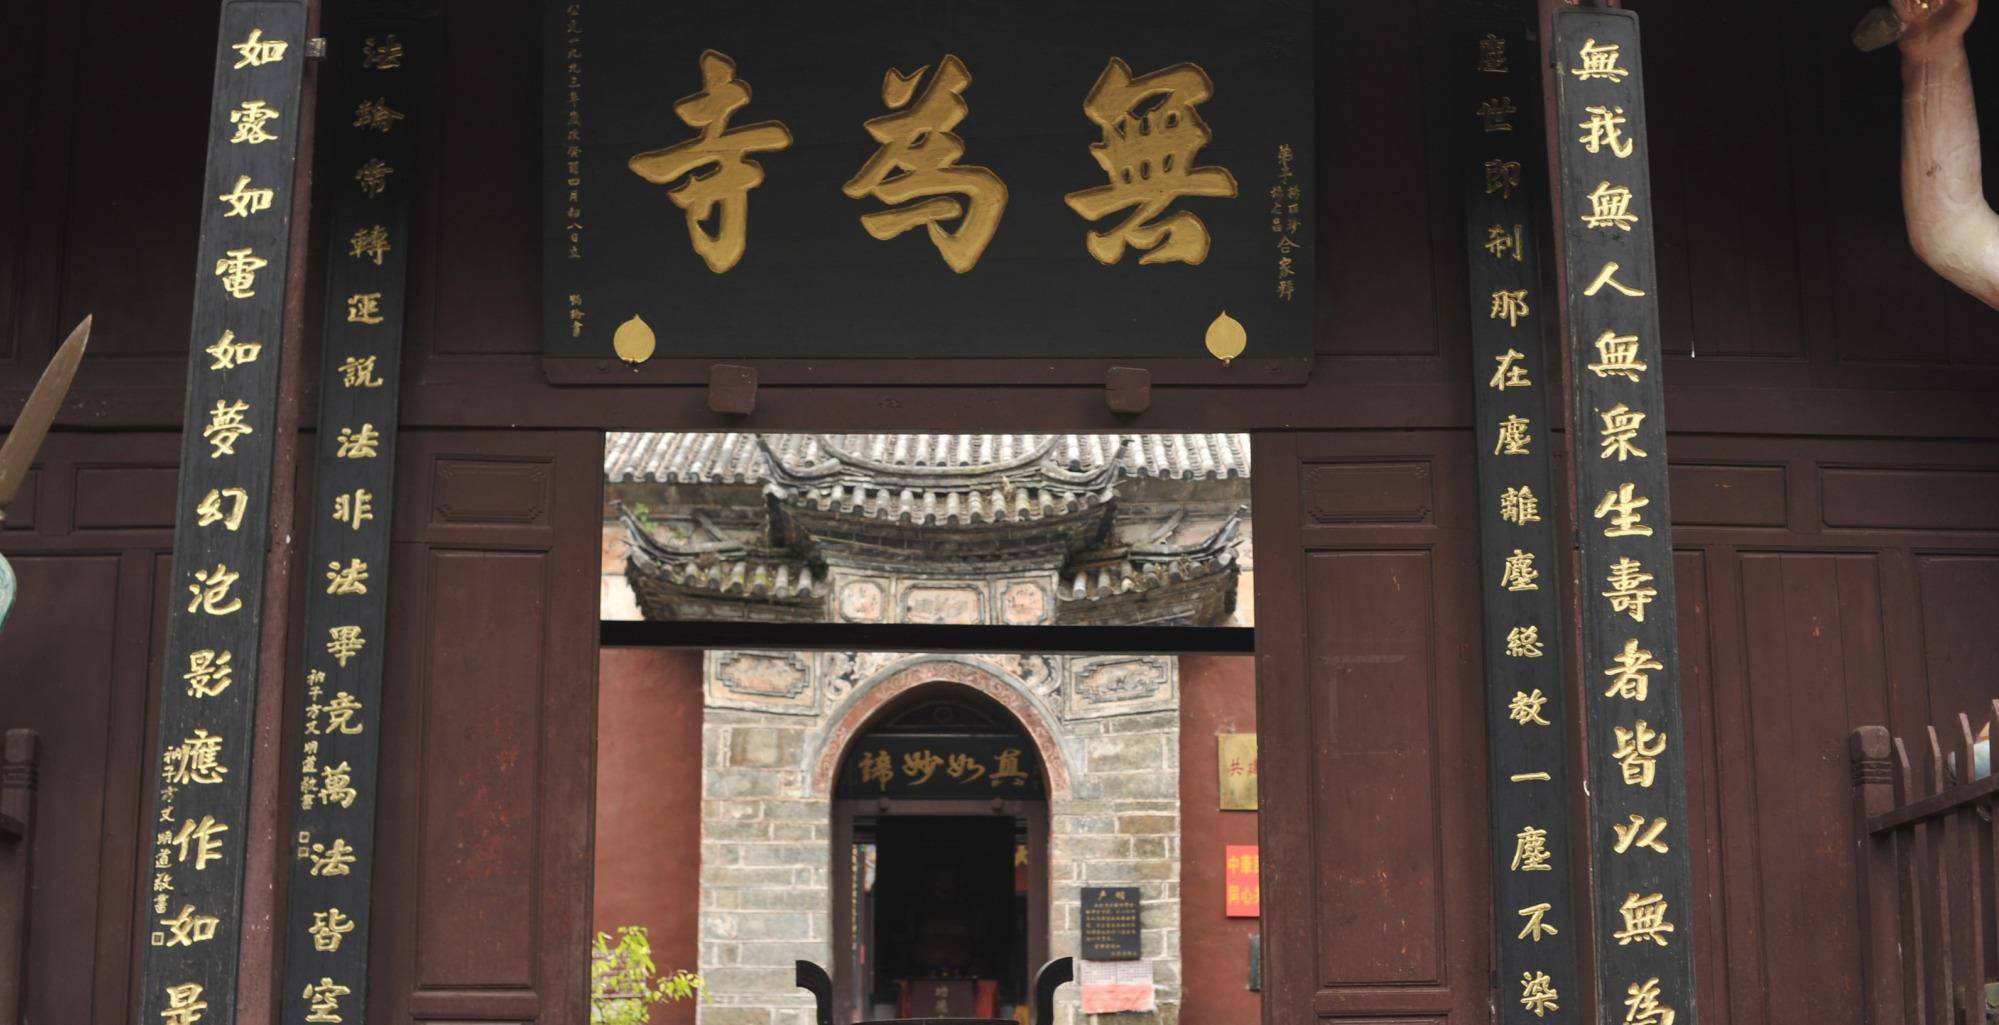 原创云南大理这个寺庙天龙八部中的段誉在此出家是天龙寺原型